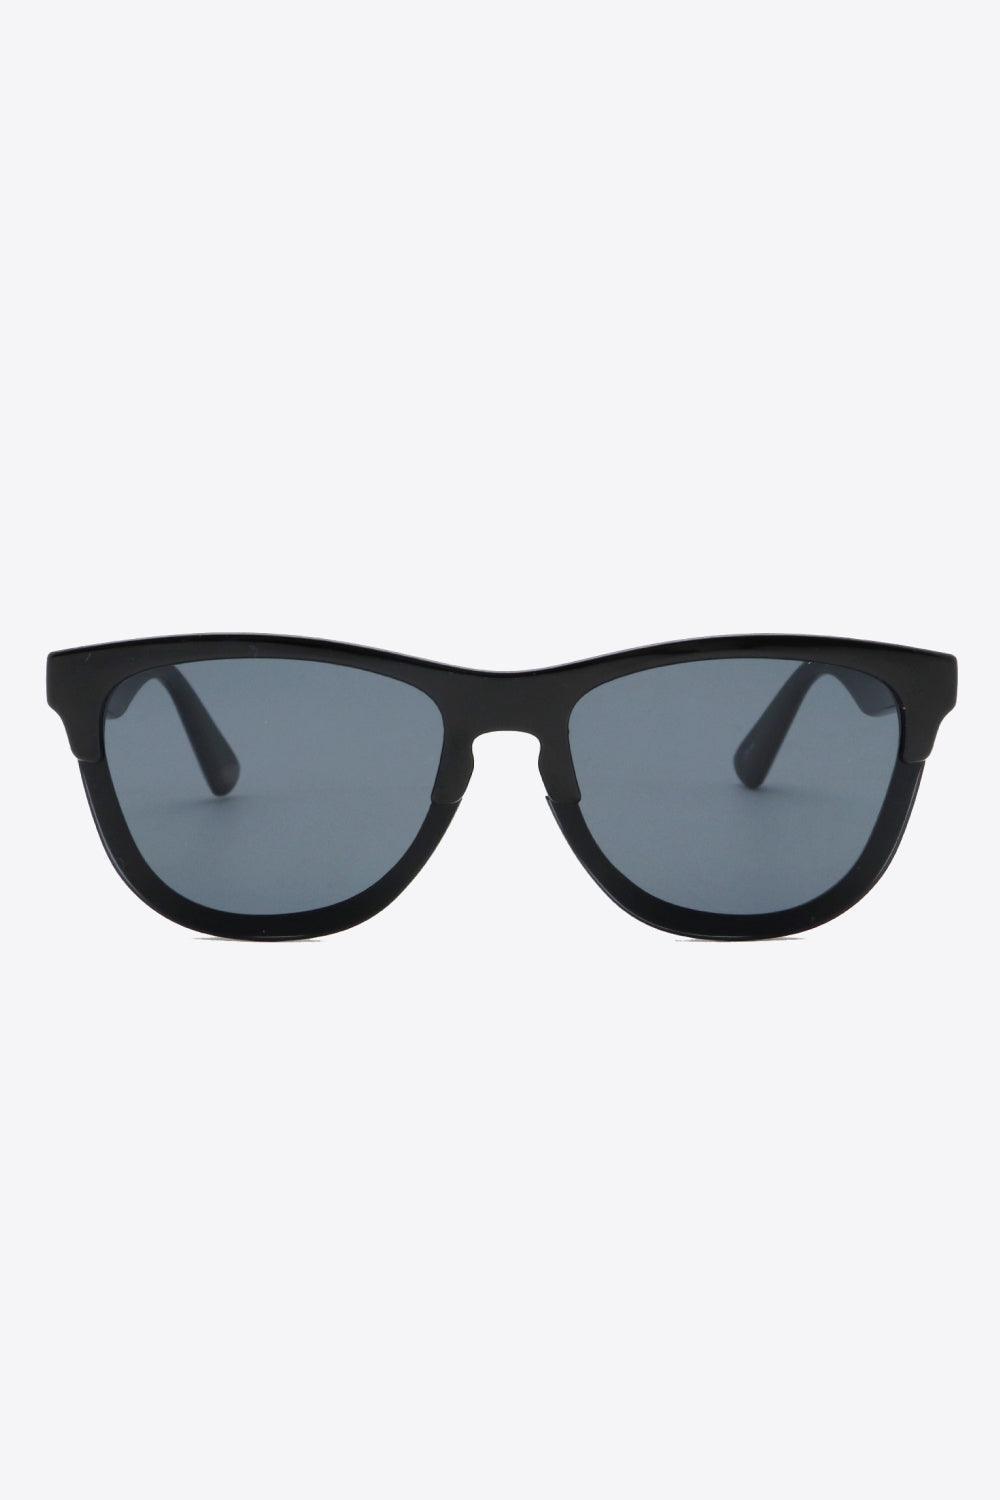 Black UV400 Browline Wayfarer Acetate Sunglasses - MXSTUDIO.COM